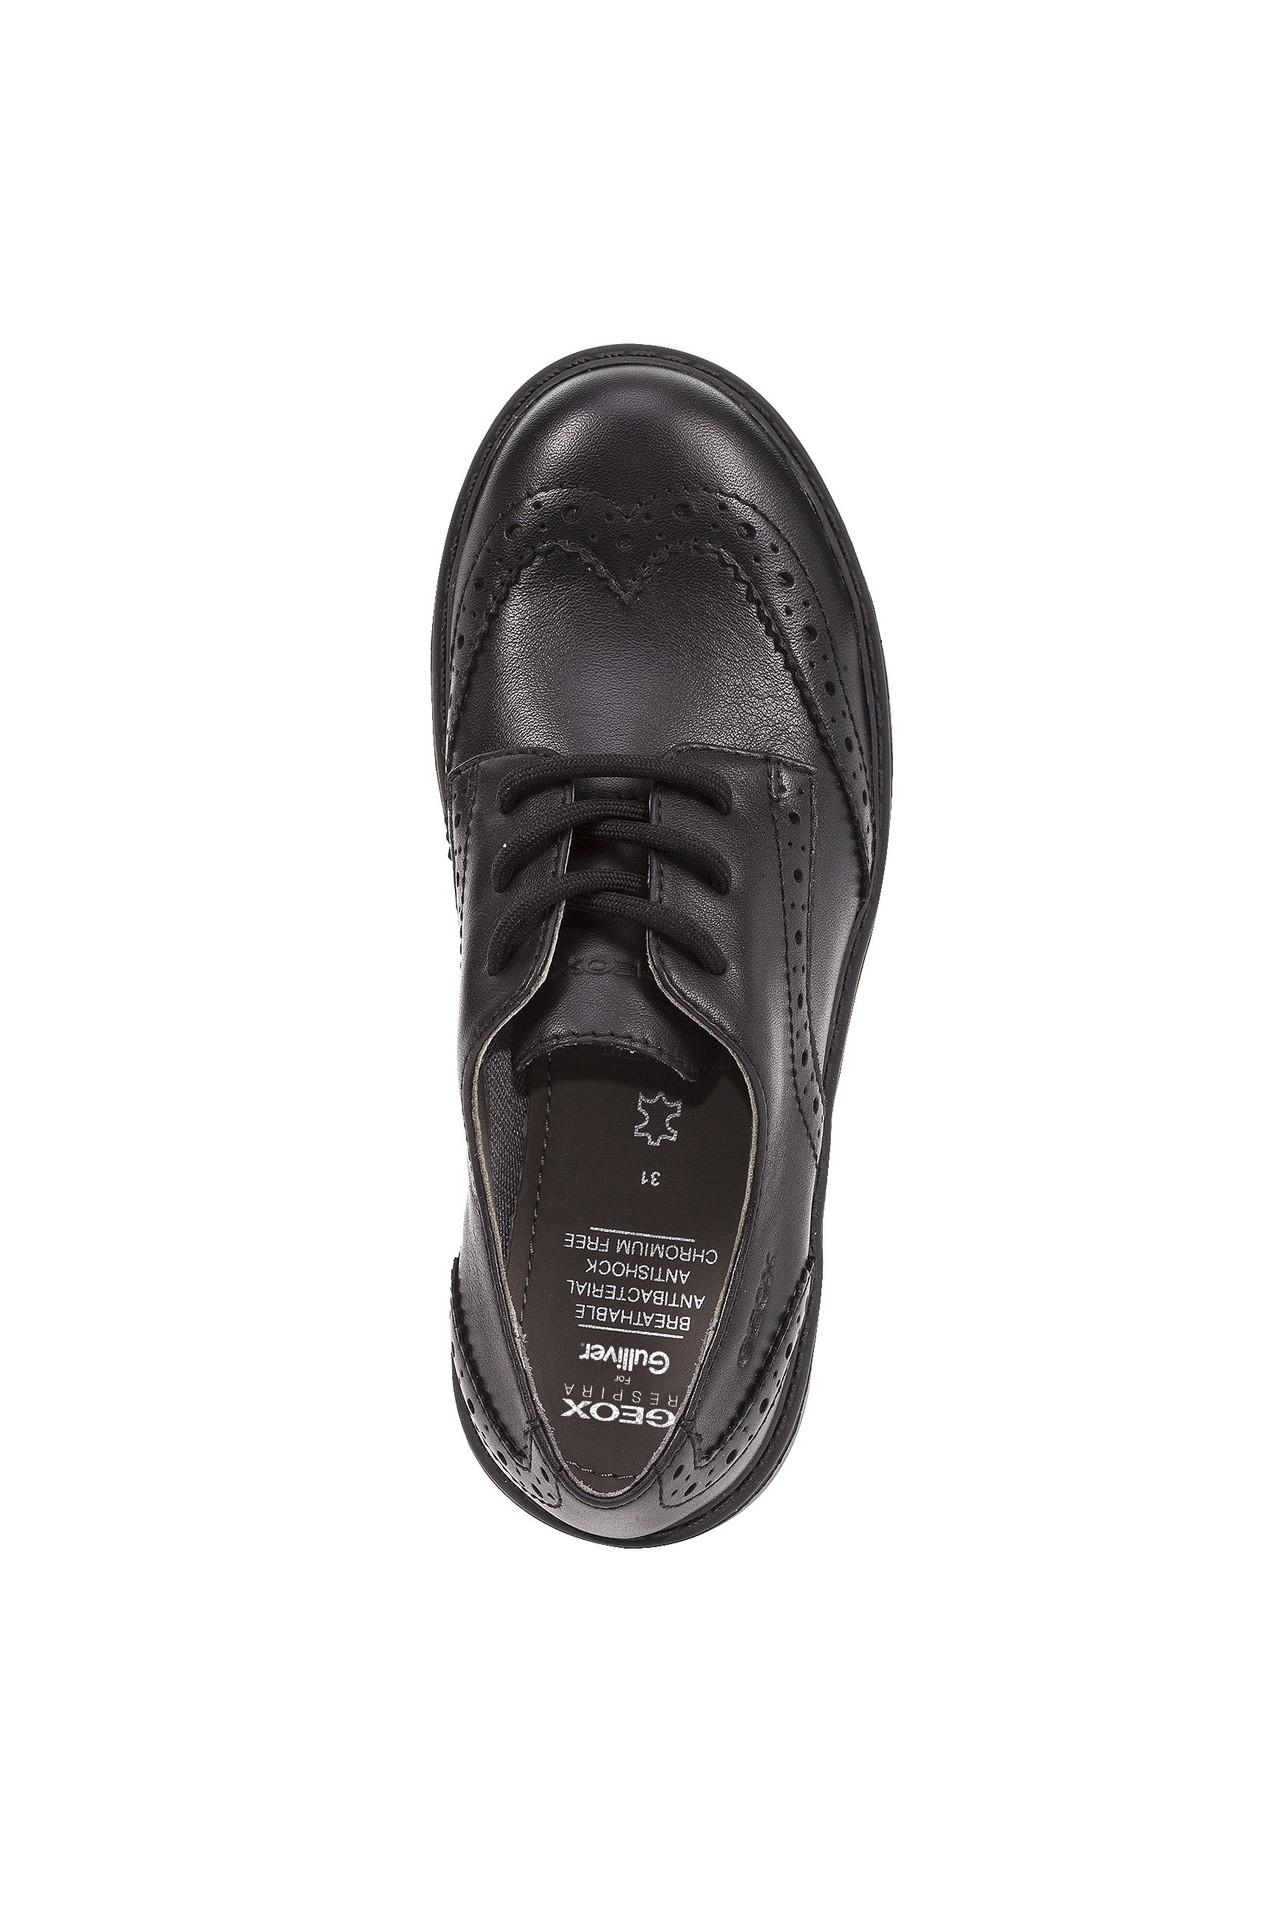 Туфли дерби Geox J6420NL0085C9999, размер 30, цвет черный - фото 5